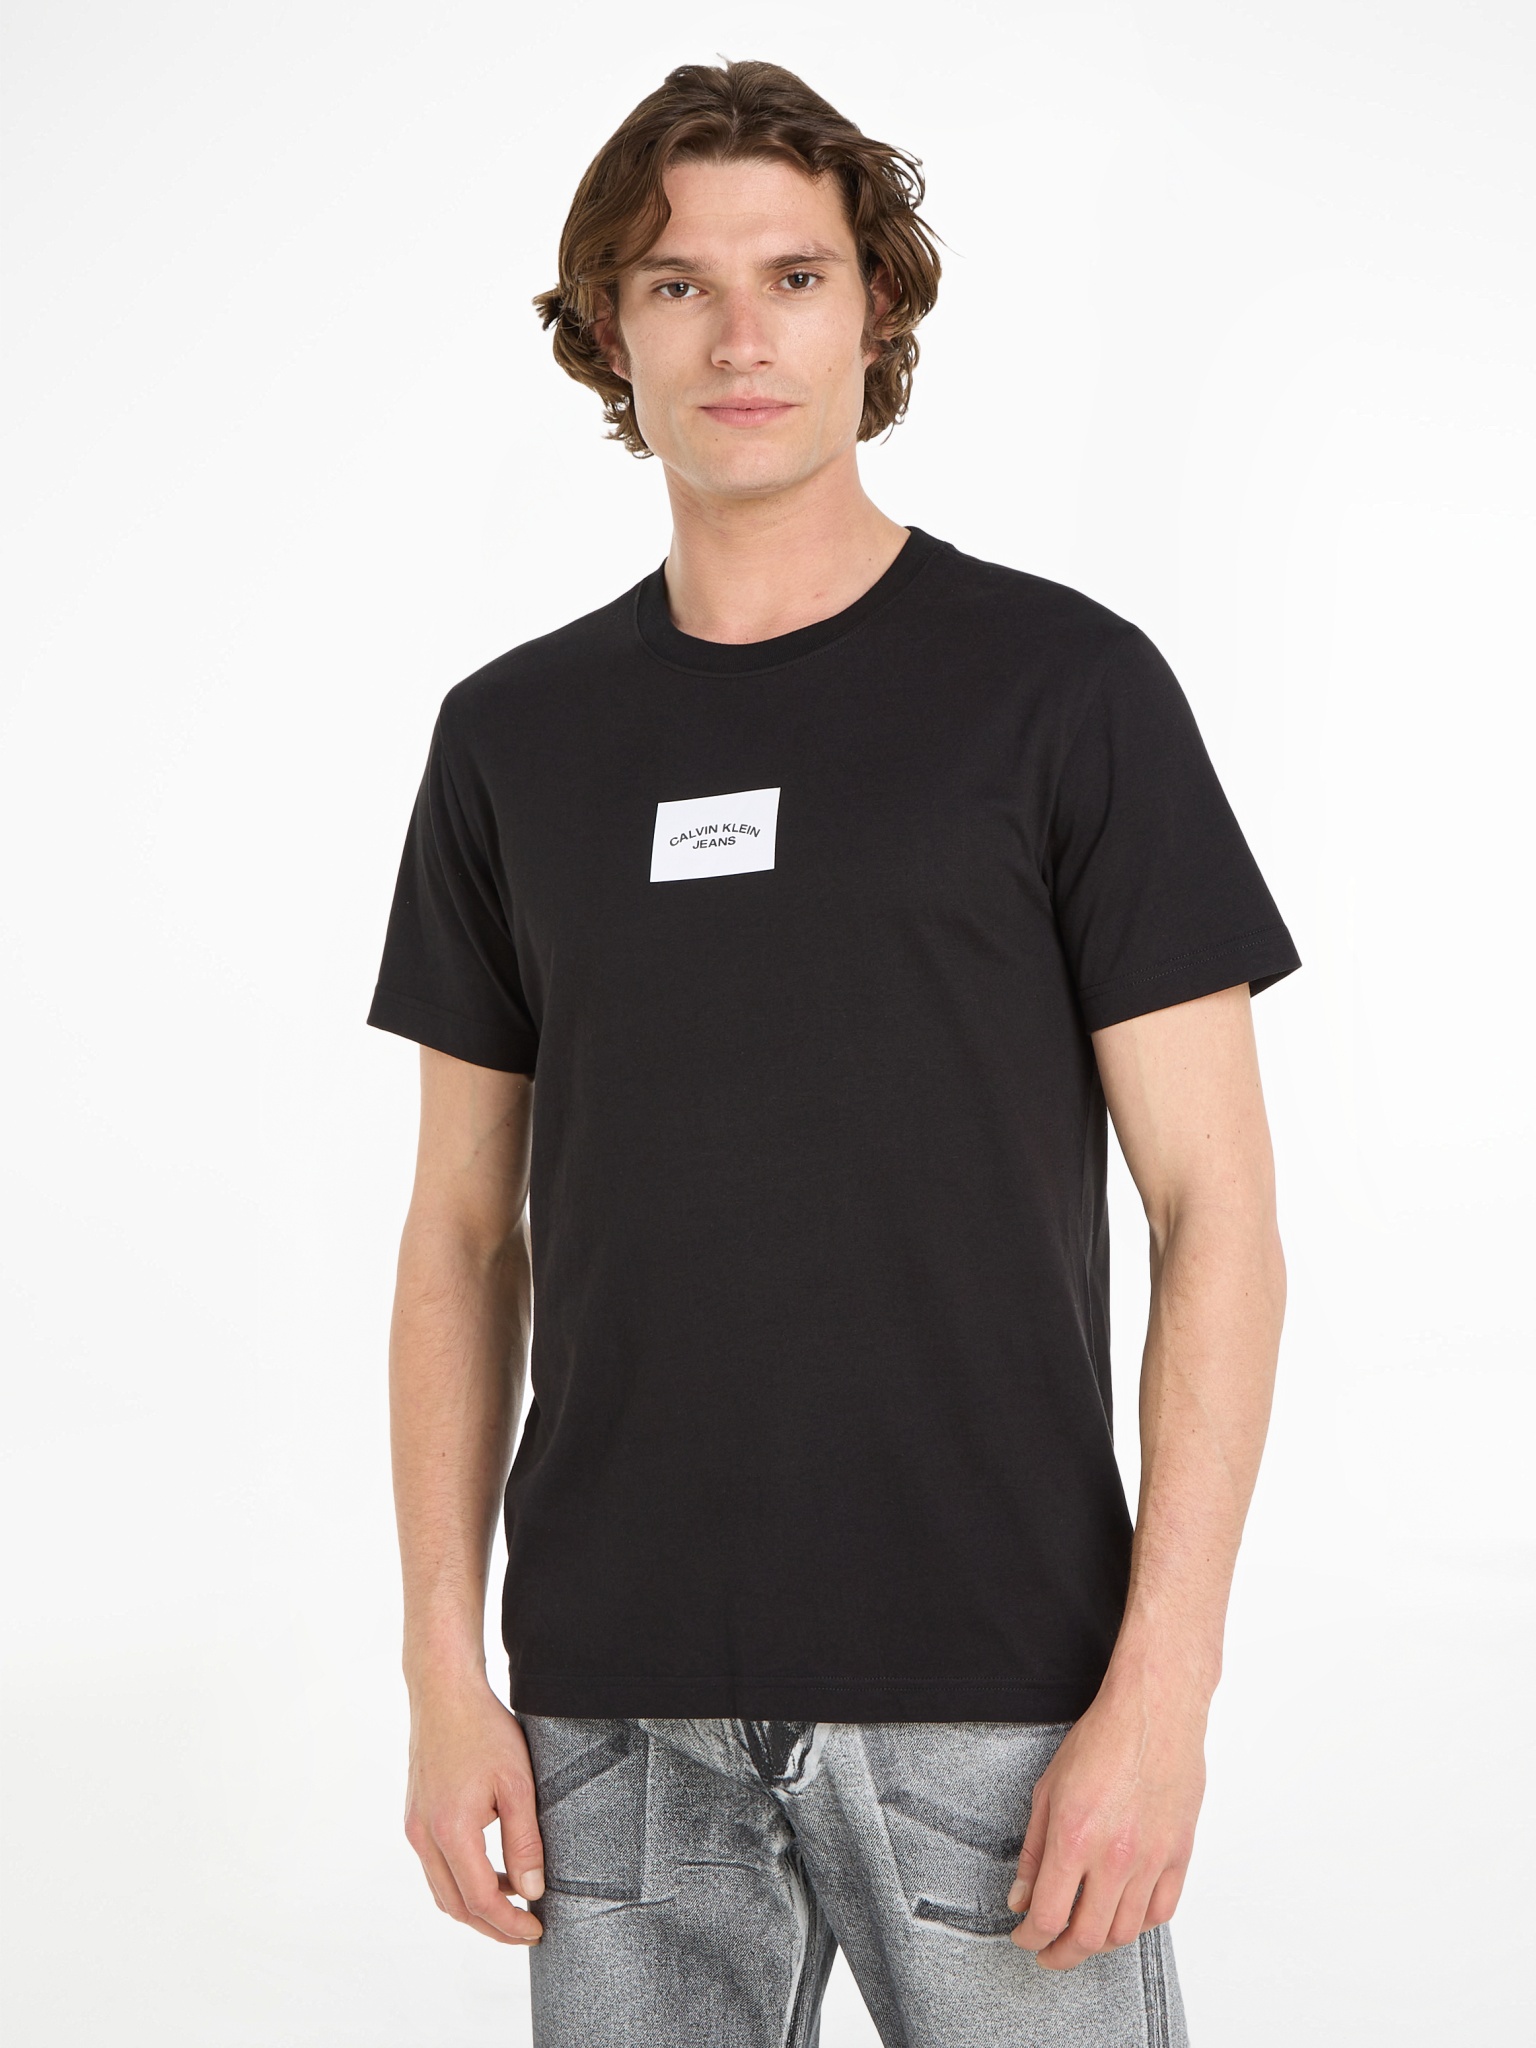 CALVIN KLEIN JEANS T-Shirt 10704549 kaufen | WÖHRL